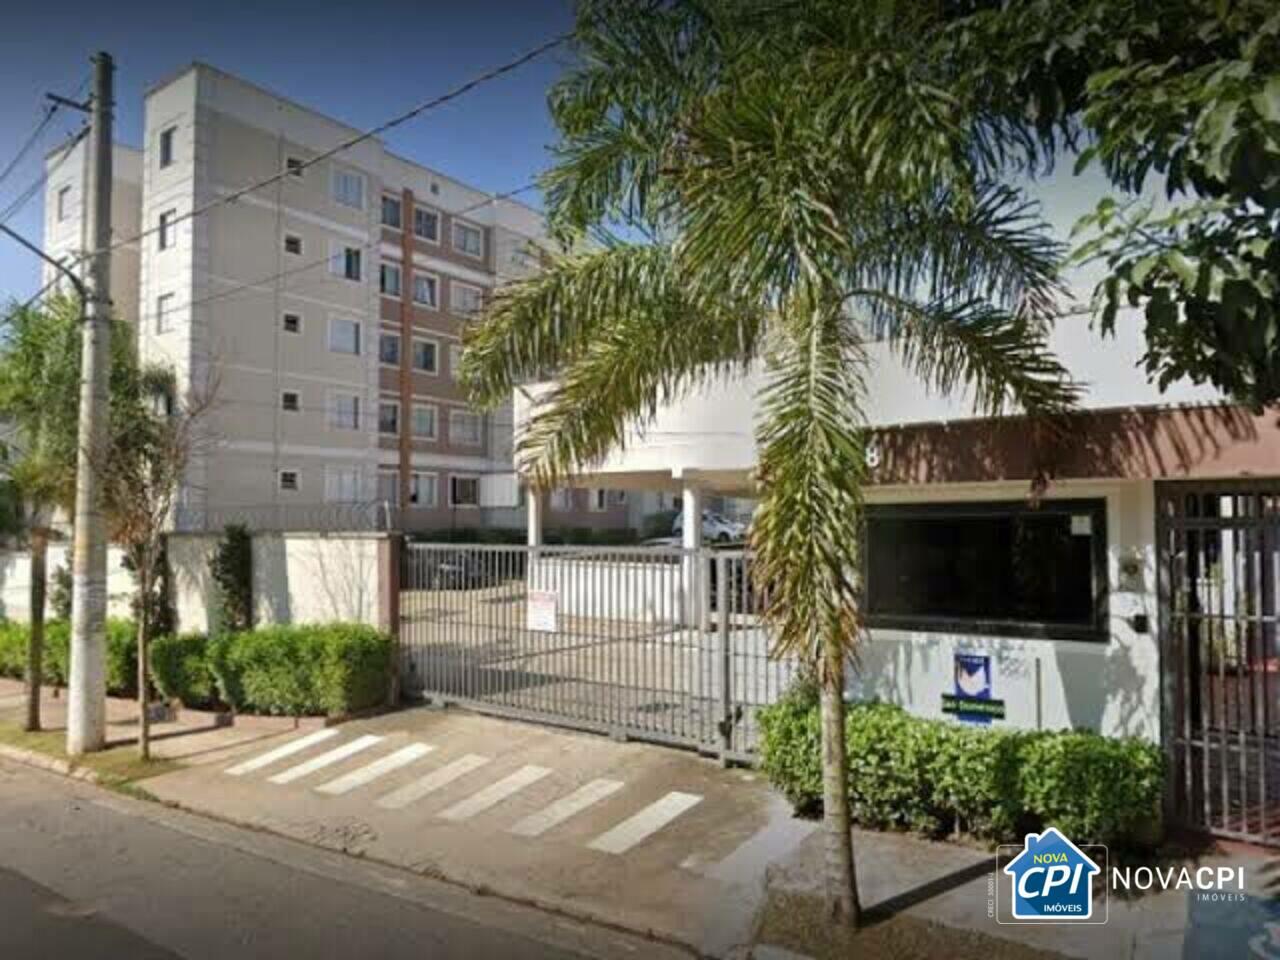 Apartamento Jaraguá, São Paulo - SP